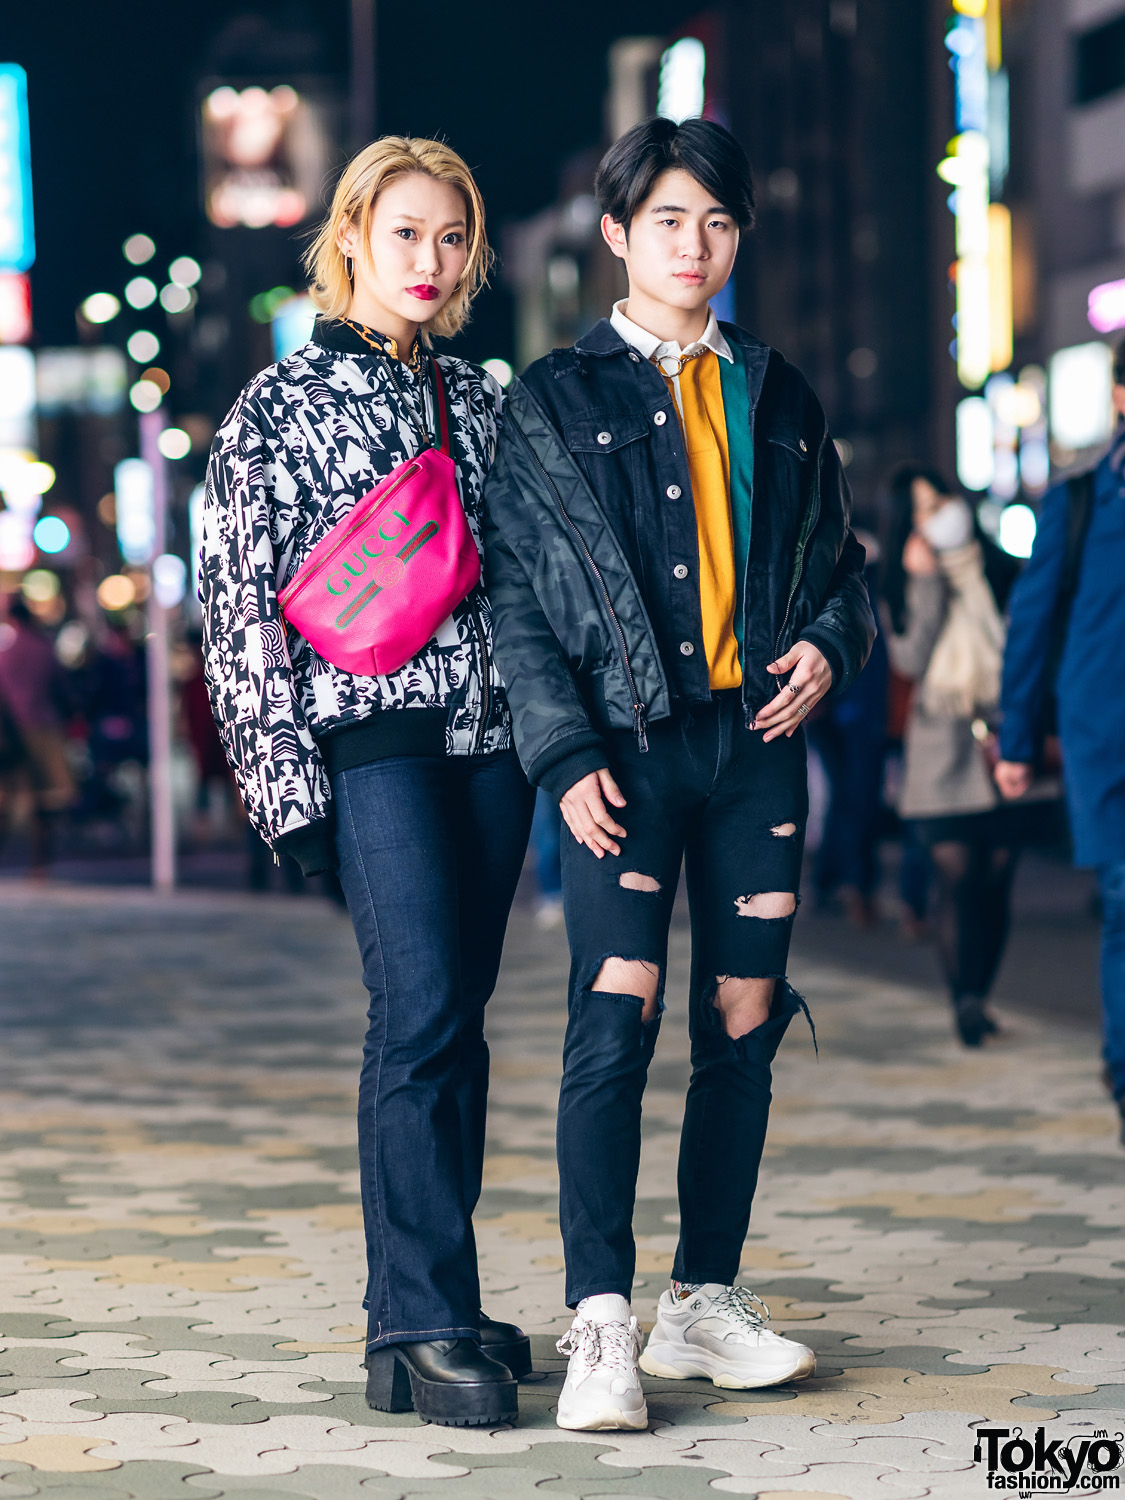 Tokyo Street Fashion w/ Hysteric Glamour, Joyrich, Diesel, Gucci, UNIF ...